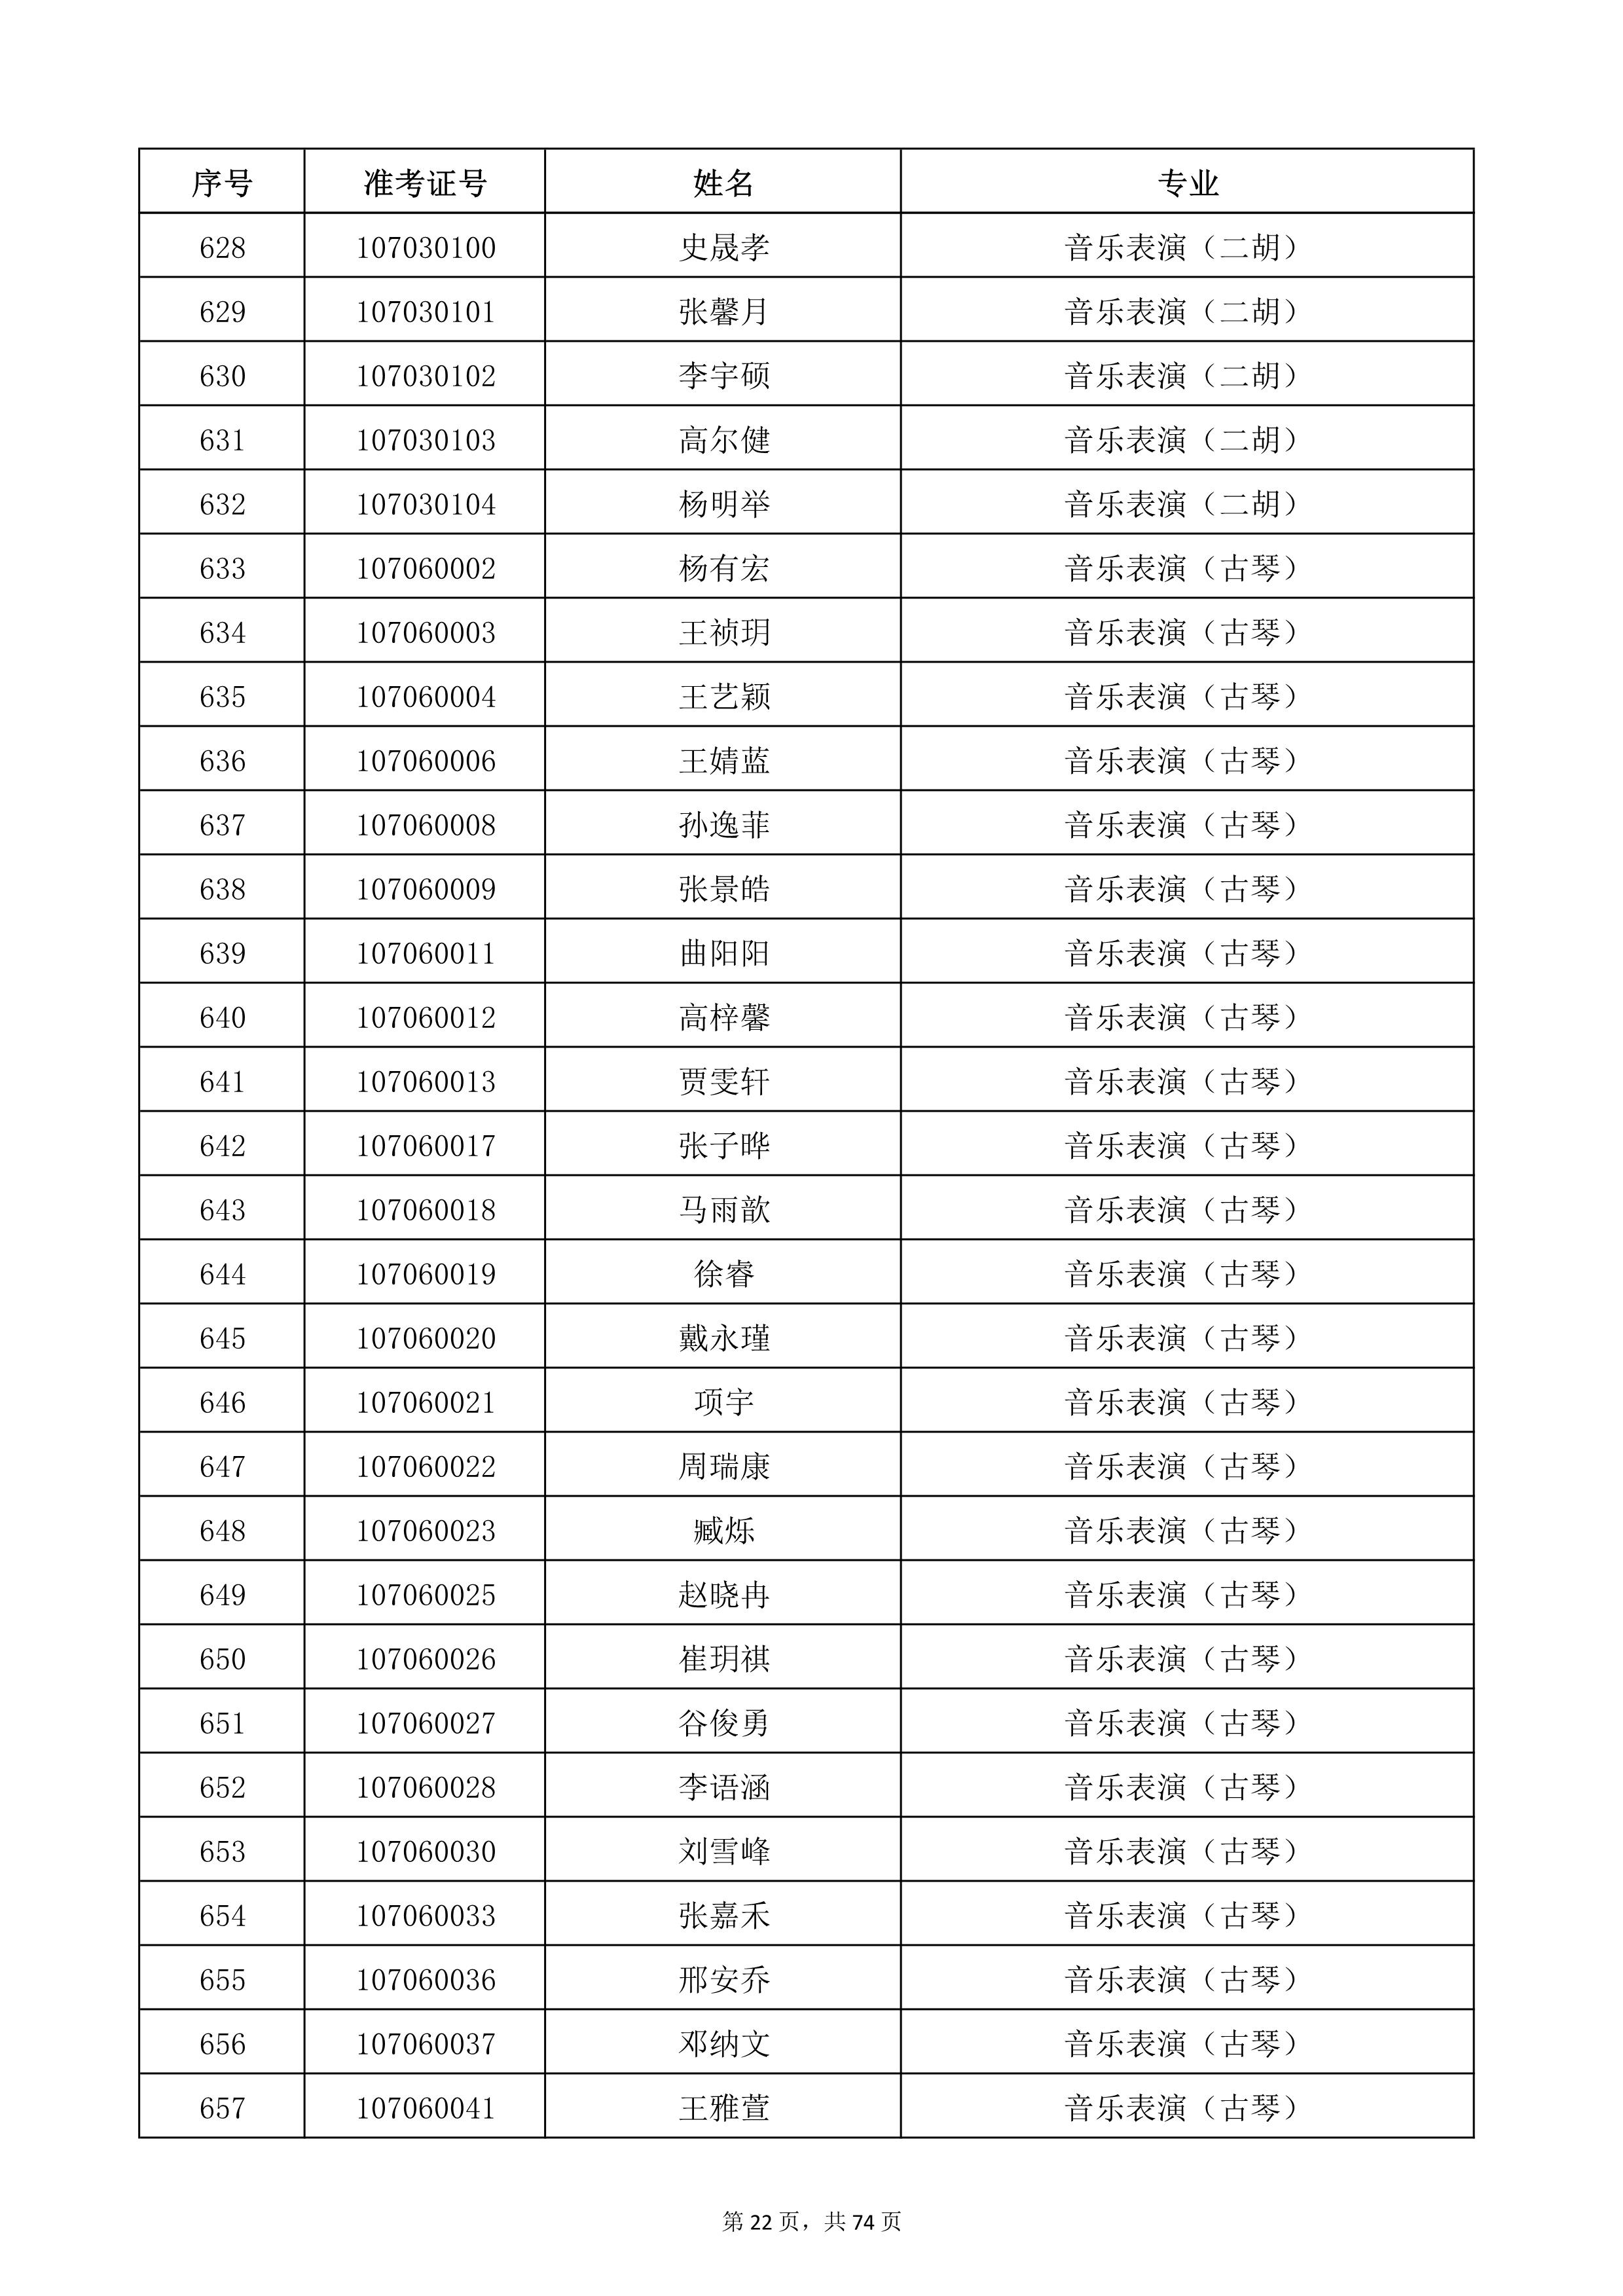 天津音乐学院2022年本科招生考试复试名单_22.jpg